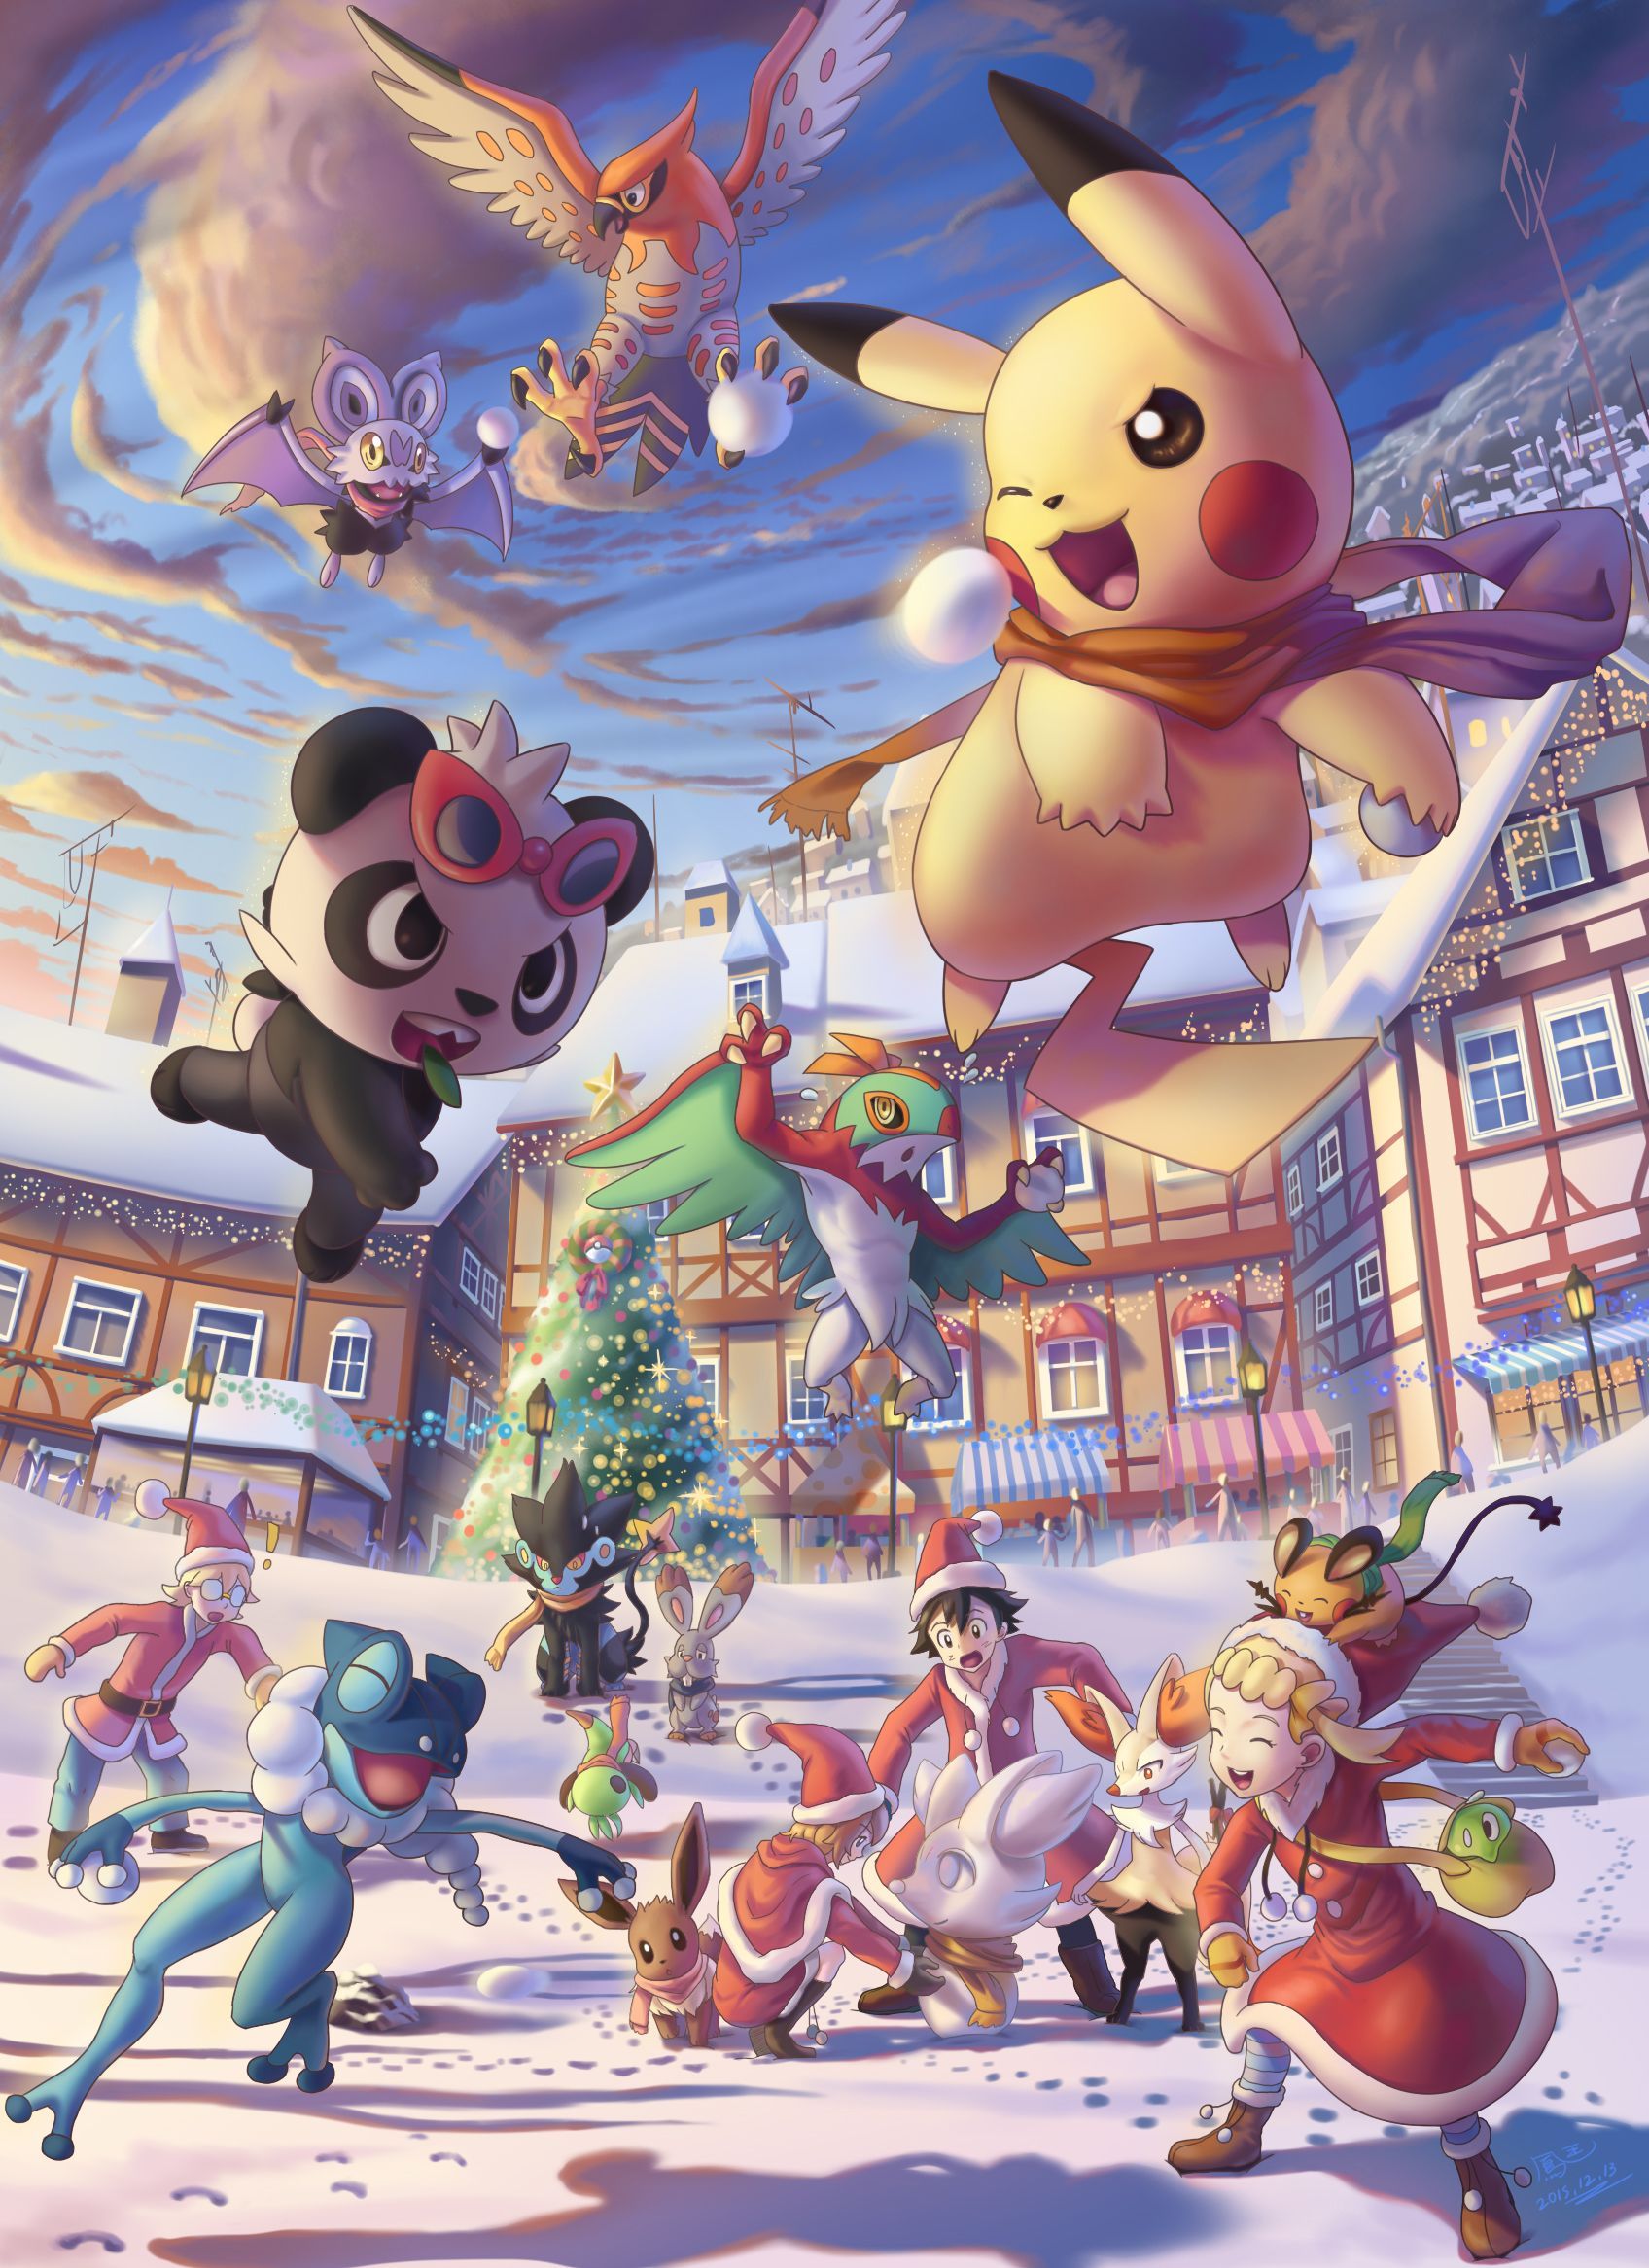 ポケモン- クリスマス2015. Pokemon kalos, Pokemon, Pokemon eevee